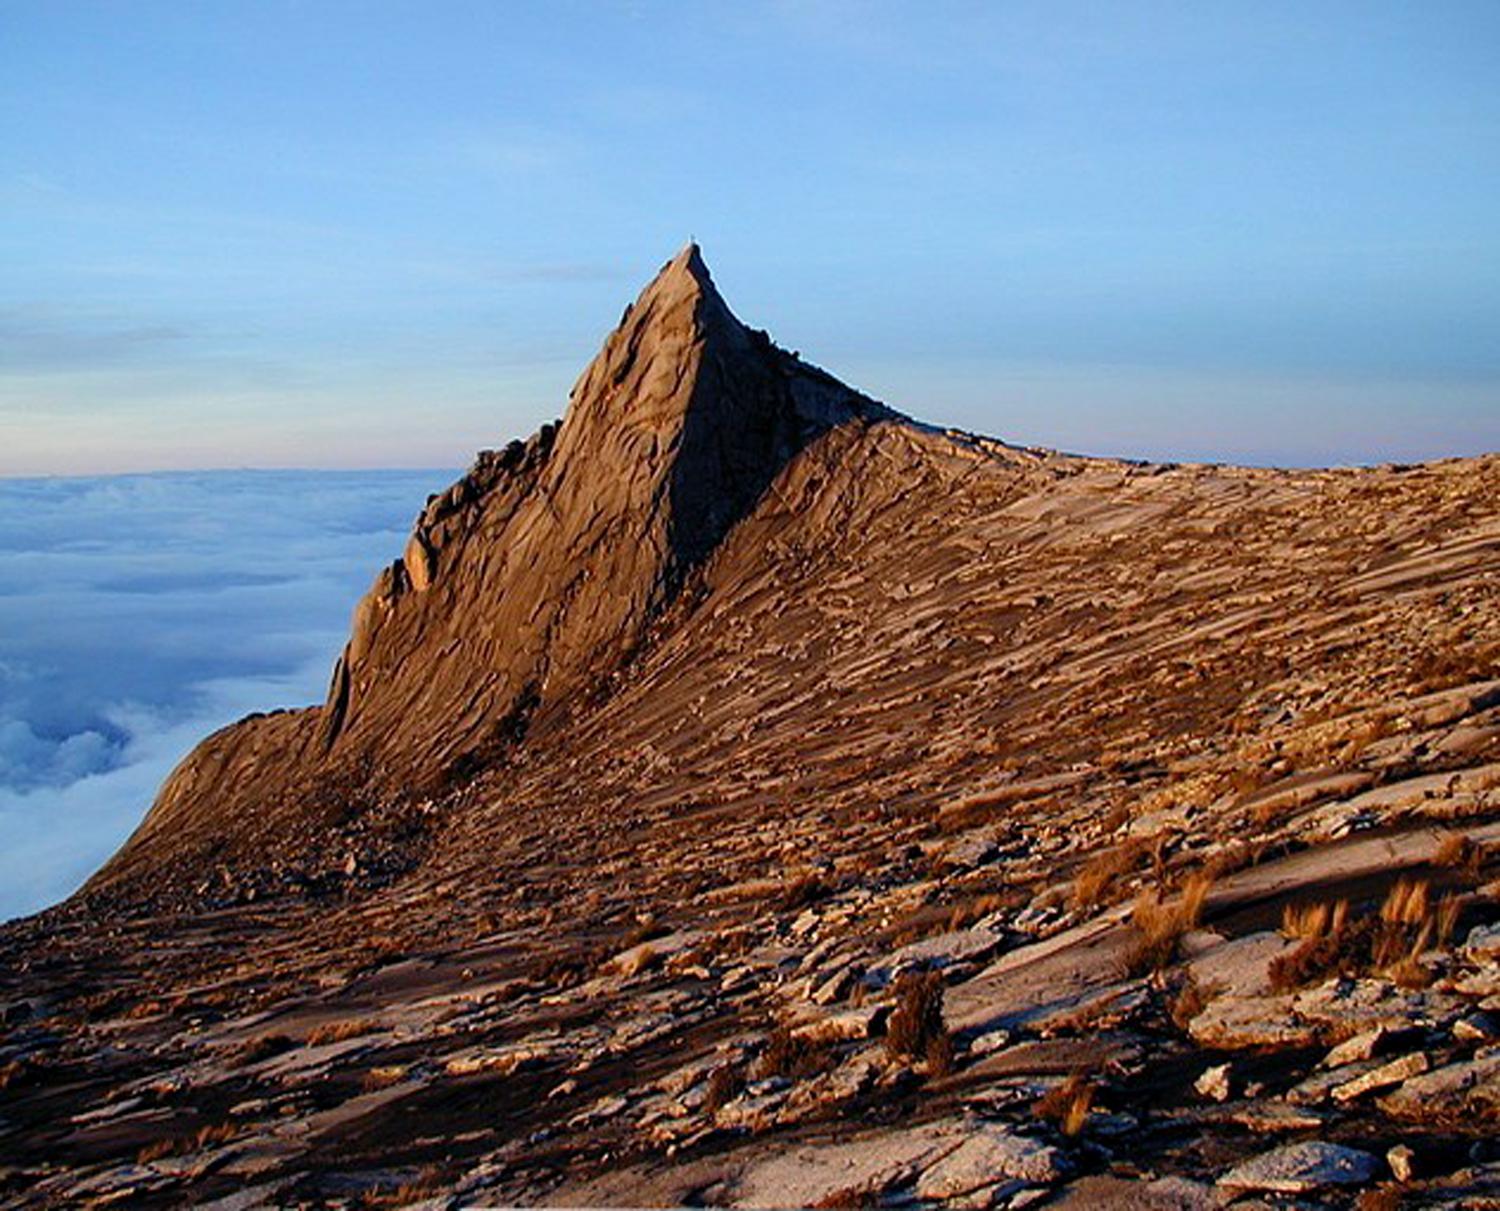 Lows Peak at 4095 2m the summit of Mount Kinabalu